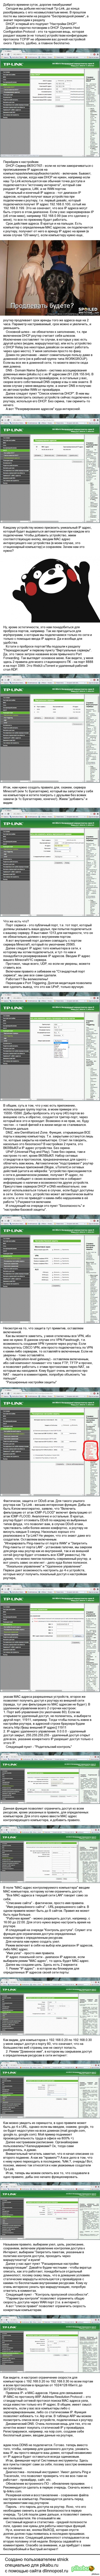     ().   .  2: Tp-Link (2/2).   .  :  <a href="http://pikabu.ru/story/funktsii_i_vozmozhnosti_routerov_marshrutizatorov_nastroyka_i_poyasneniya_chast_1_tplink_12_3039802">http://pikabu.ru/story/_3039802</a>